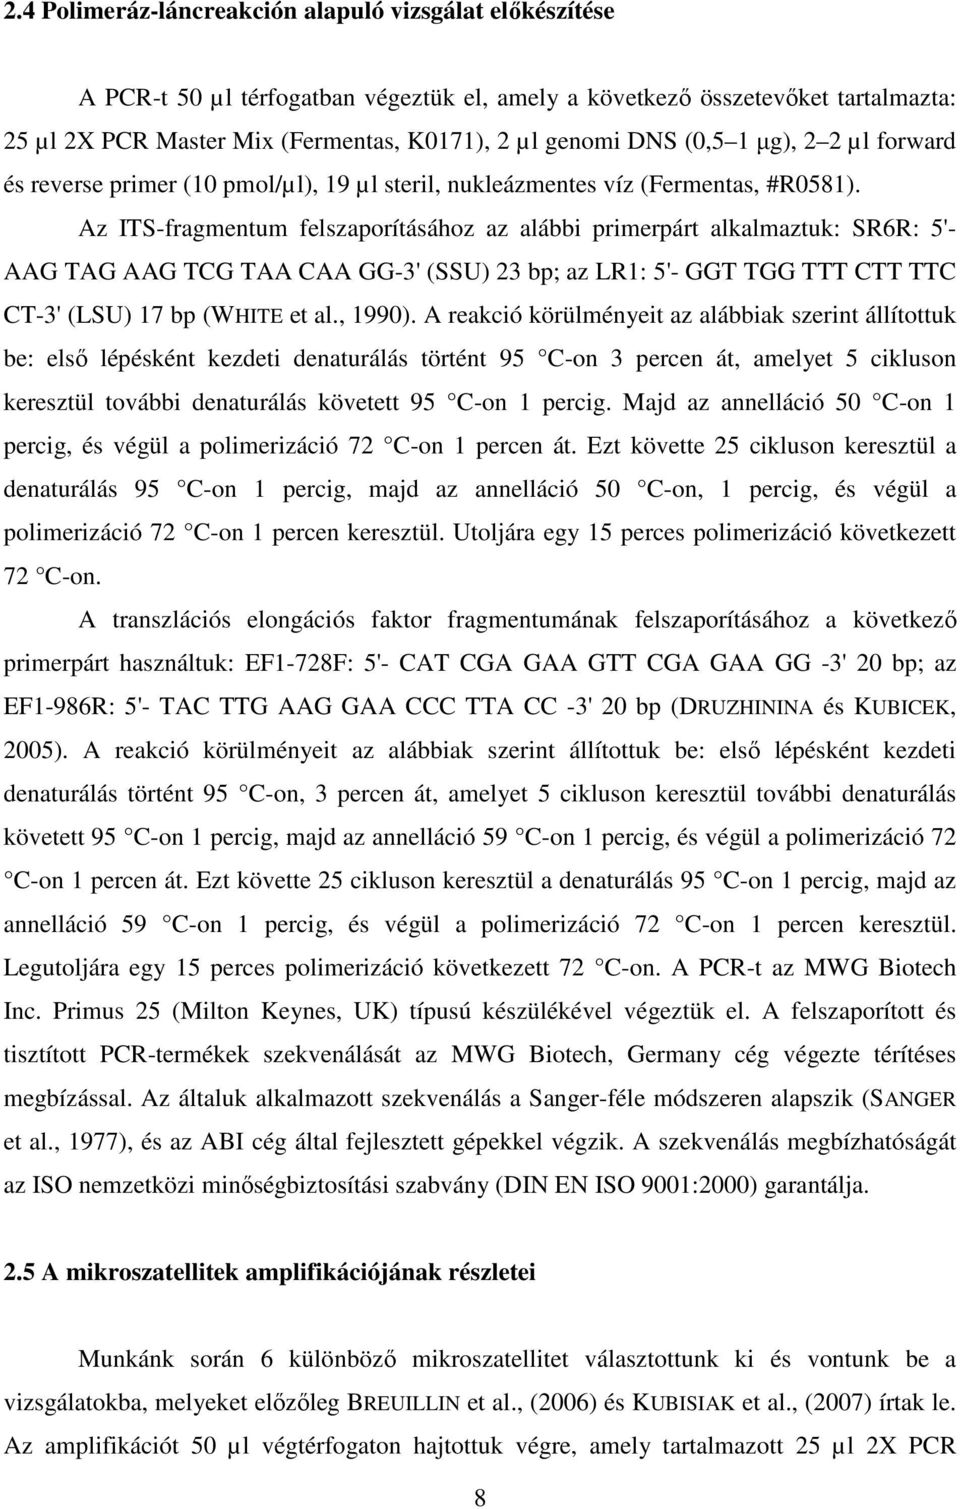 Az ITS-fragmentum felszaporításához az alábbi primerpárt alkalmaztuk: SR6R: 5'- AAG TAG AAG TCG TAA CAA GG-3' (SSU) 23 bp; az LR1: 5'- GGT TGG TTT CTT TTC CT-3' (LSU) 17 bp (WHITE et al., 1990).